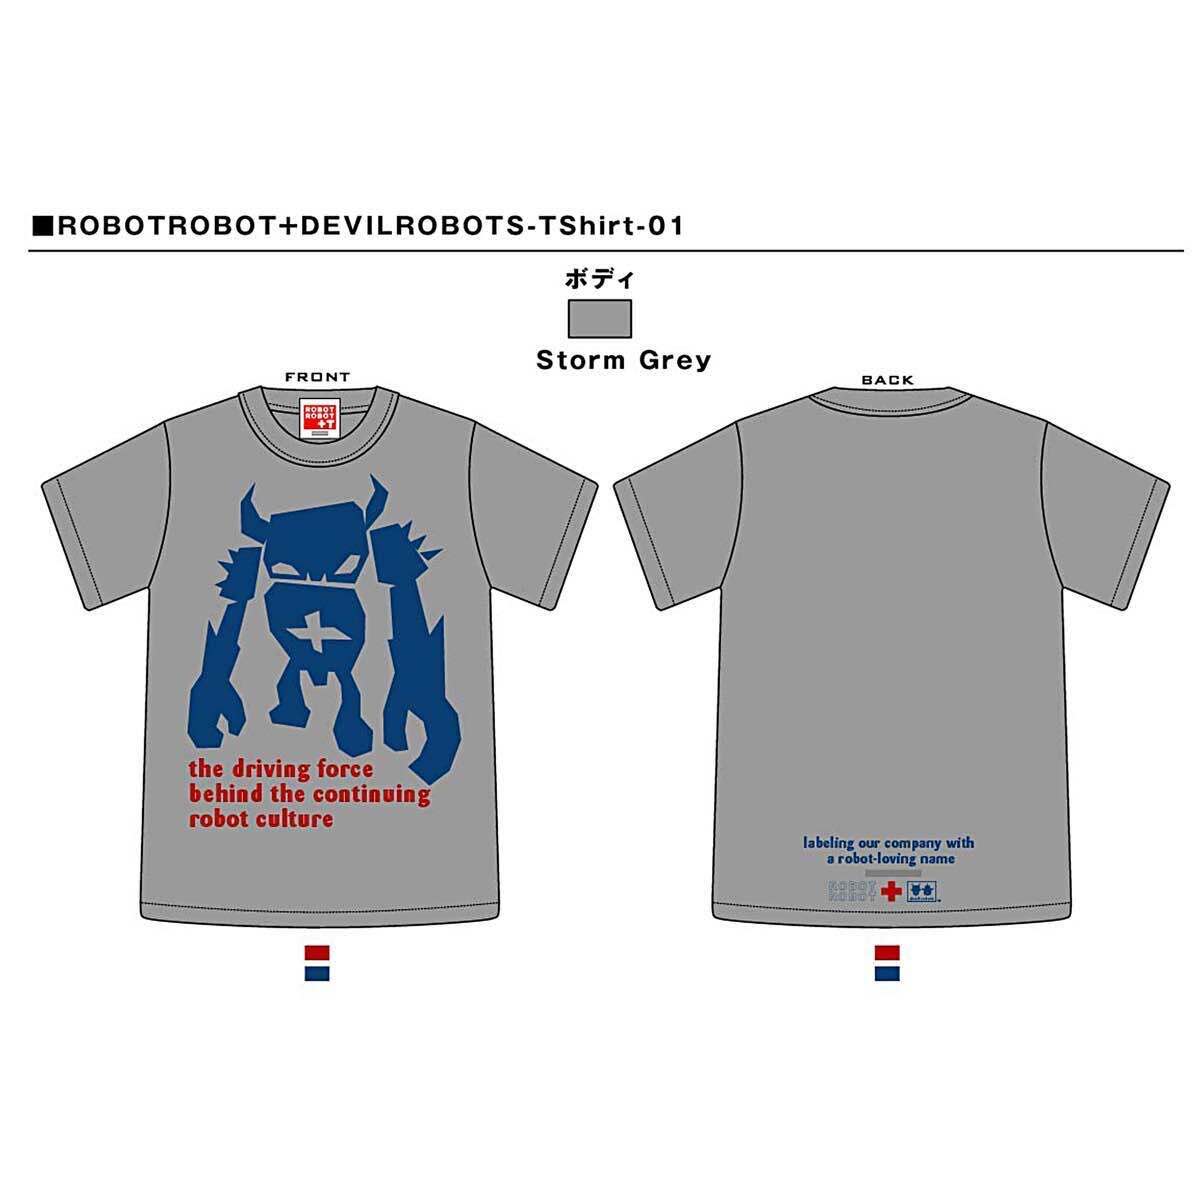 ■デビルロボッツ+ロボットロボット Tシャツ01